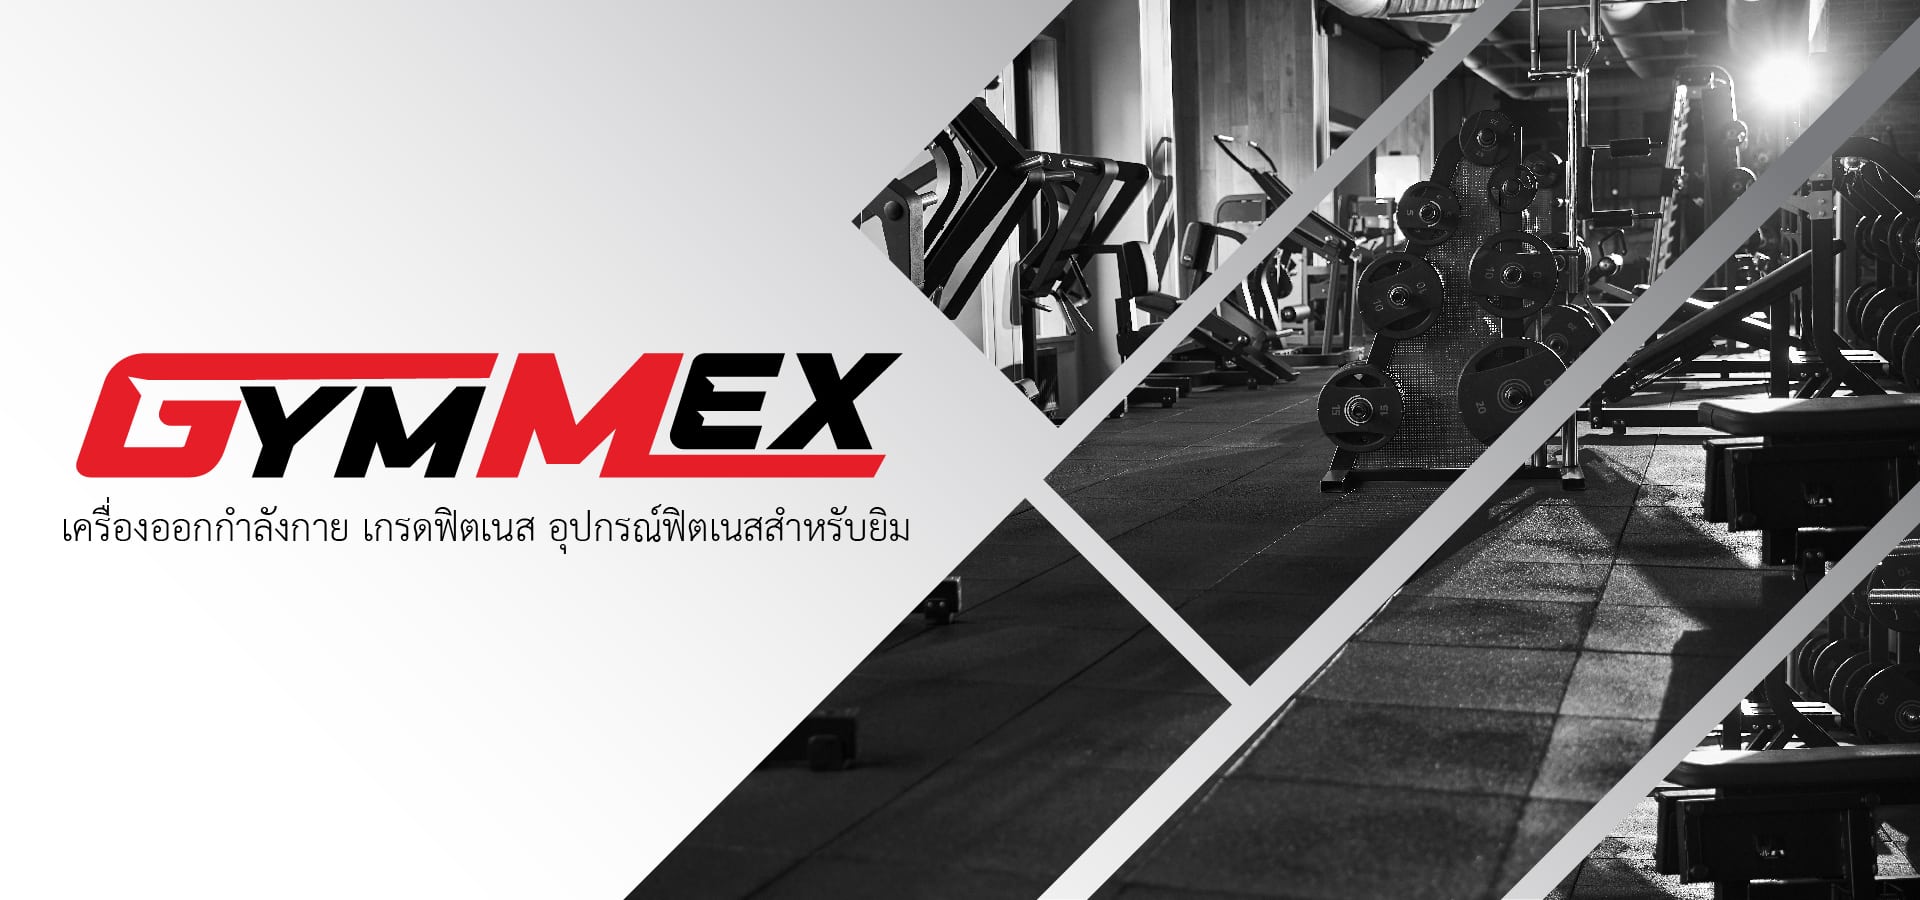 GYM MEX จำหน่าย และ ให้เช่า เครื่องออกกำลังกาย เกรดฟิตเนส อุปกรณ์ฟิตเนสสำหรับยิม